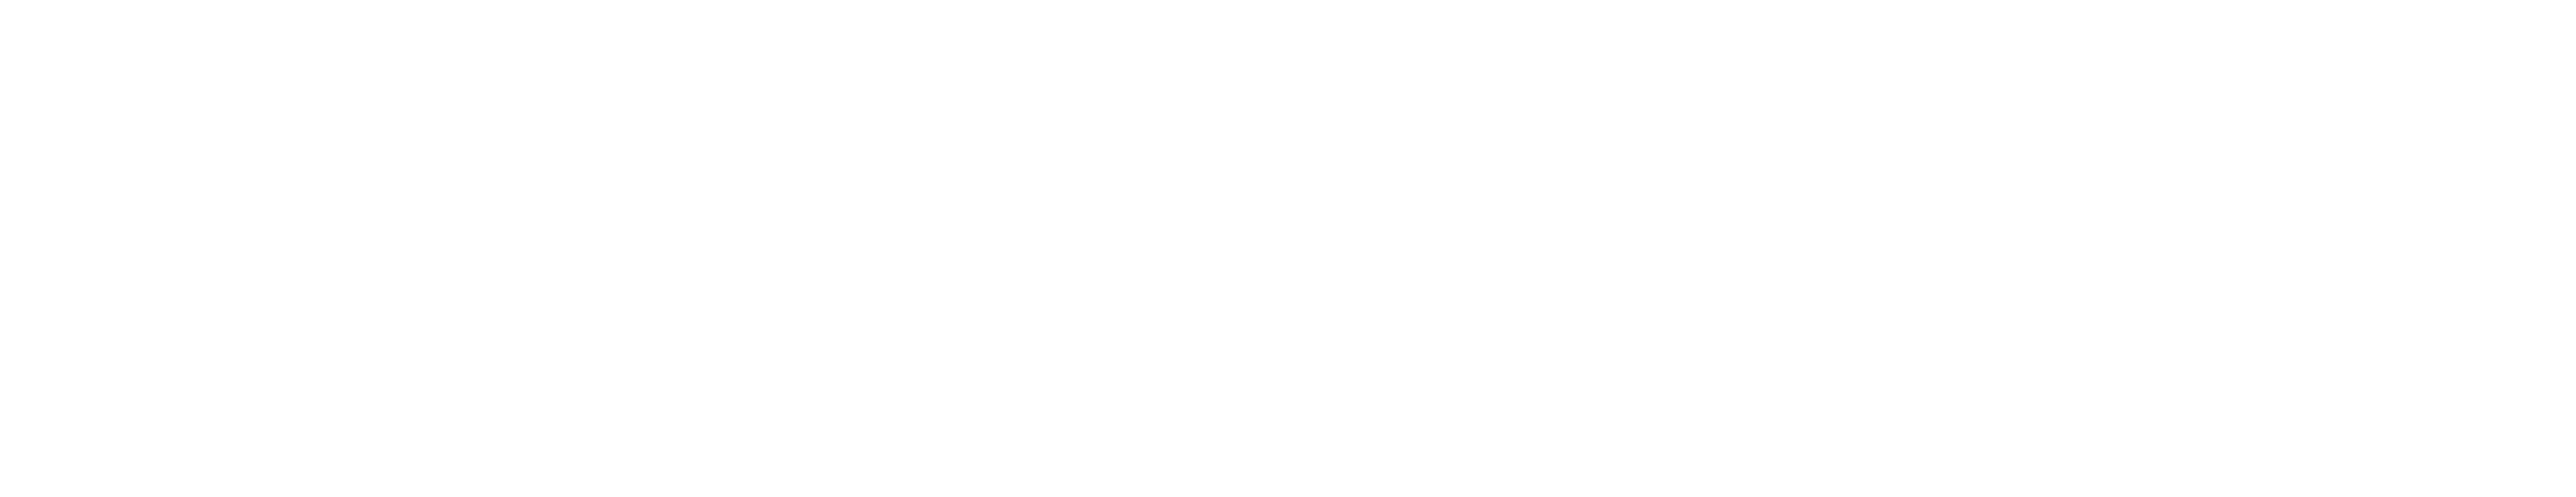 Keyter logo 2020 blanco